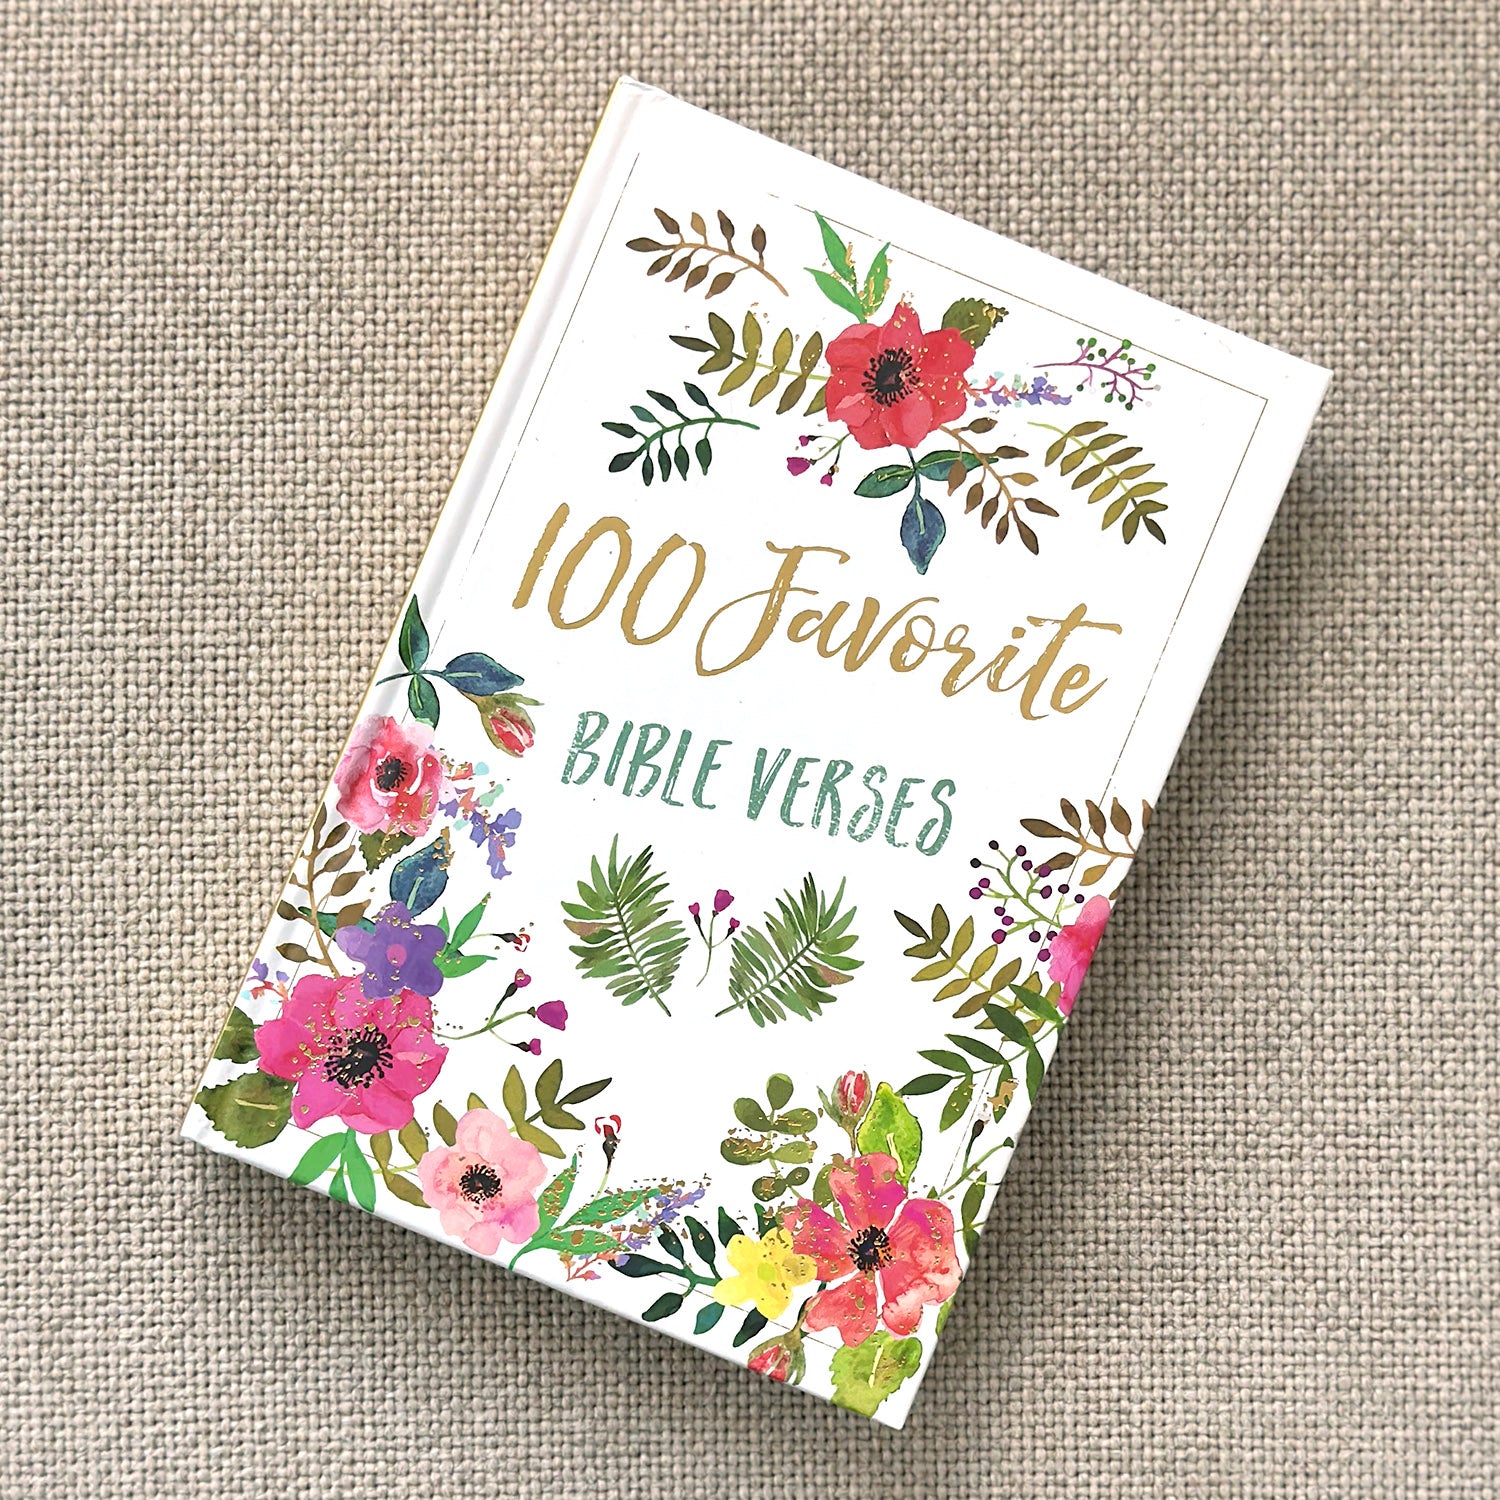 Book: 100 Favorite Bible Verses